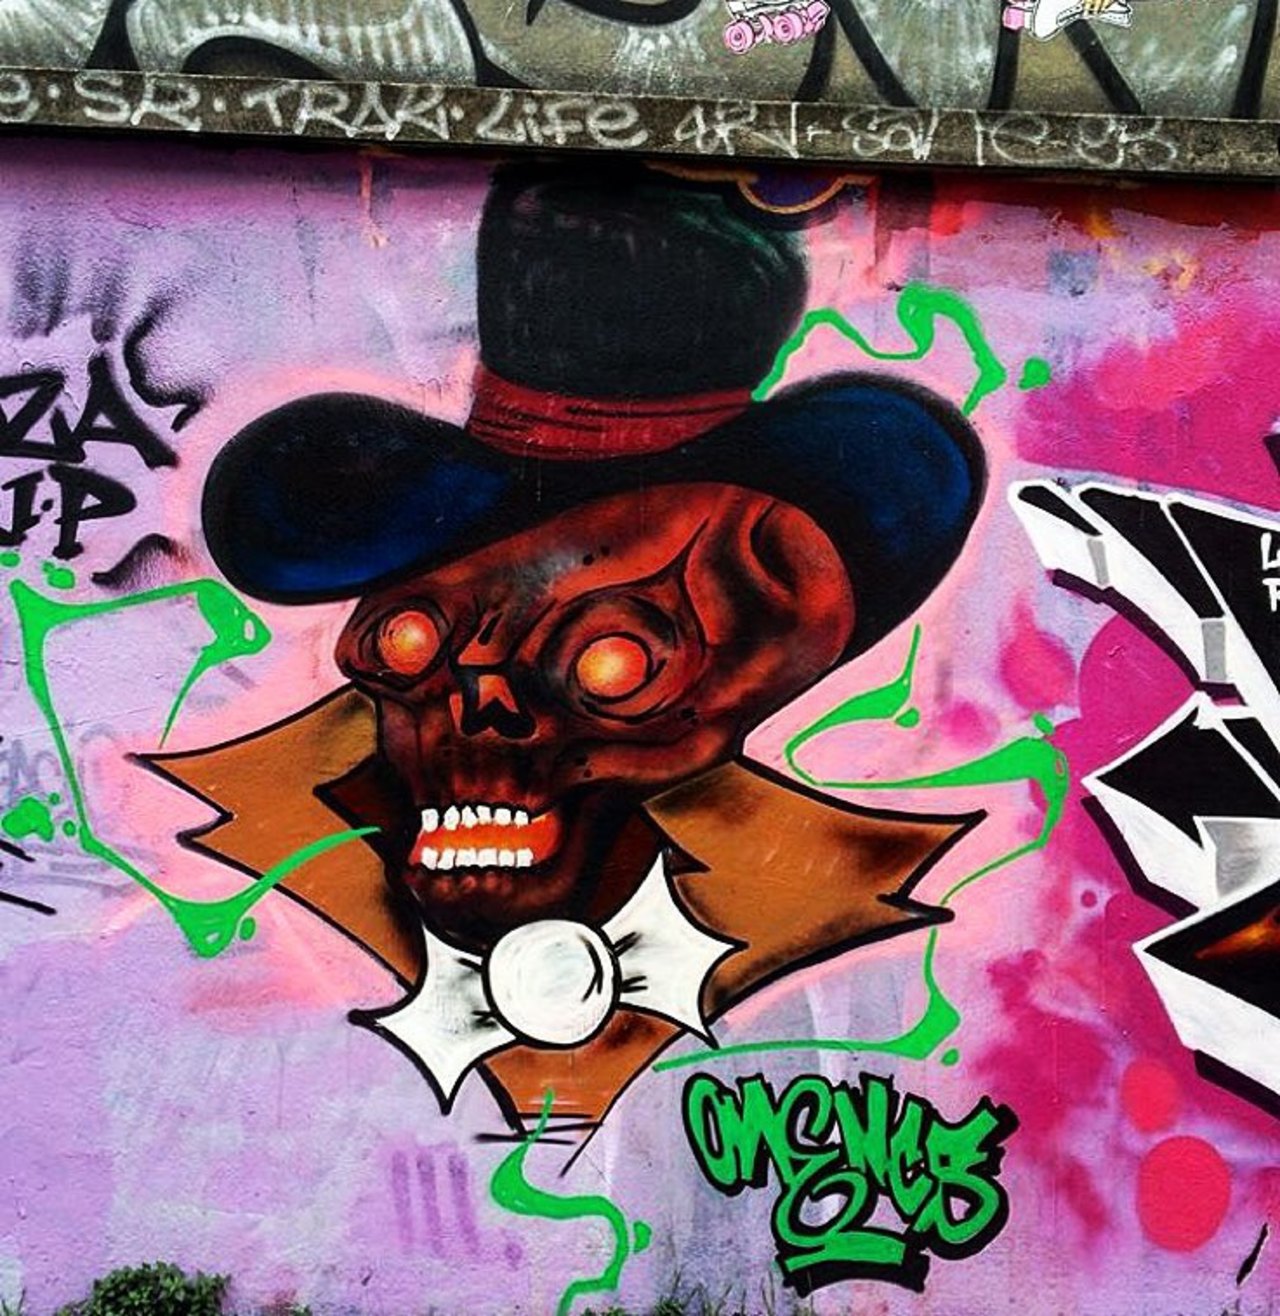 #Paris #graffiti photo by @julosteart http://ift.tt/1XjL9Nz #StreetArt https://t.co/Awkckp8Ax8